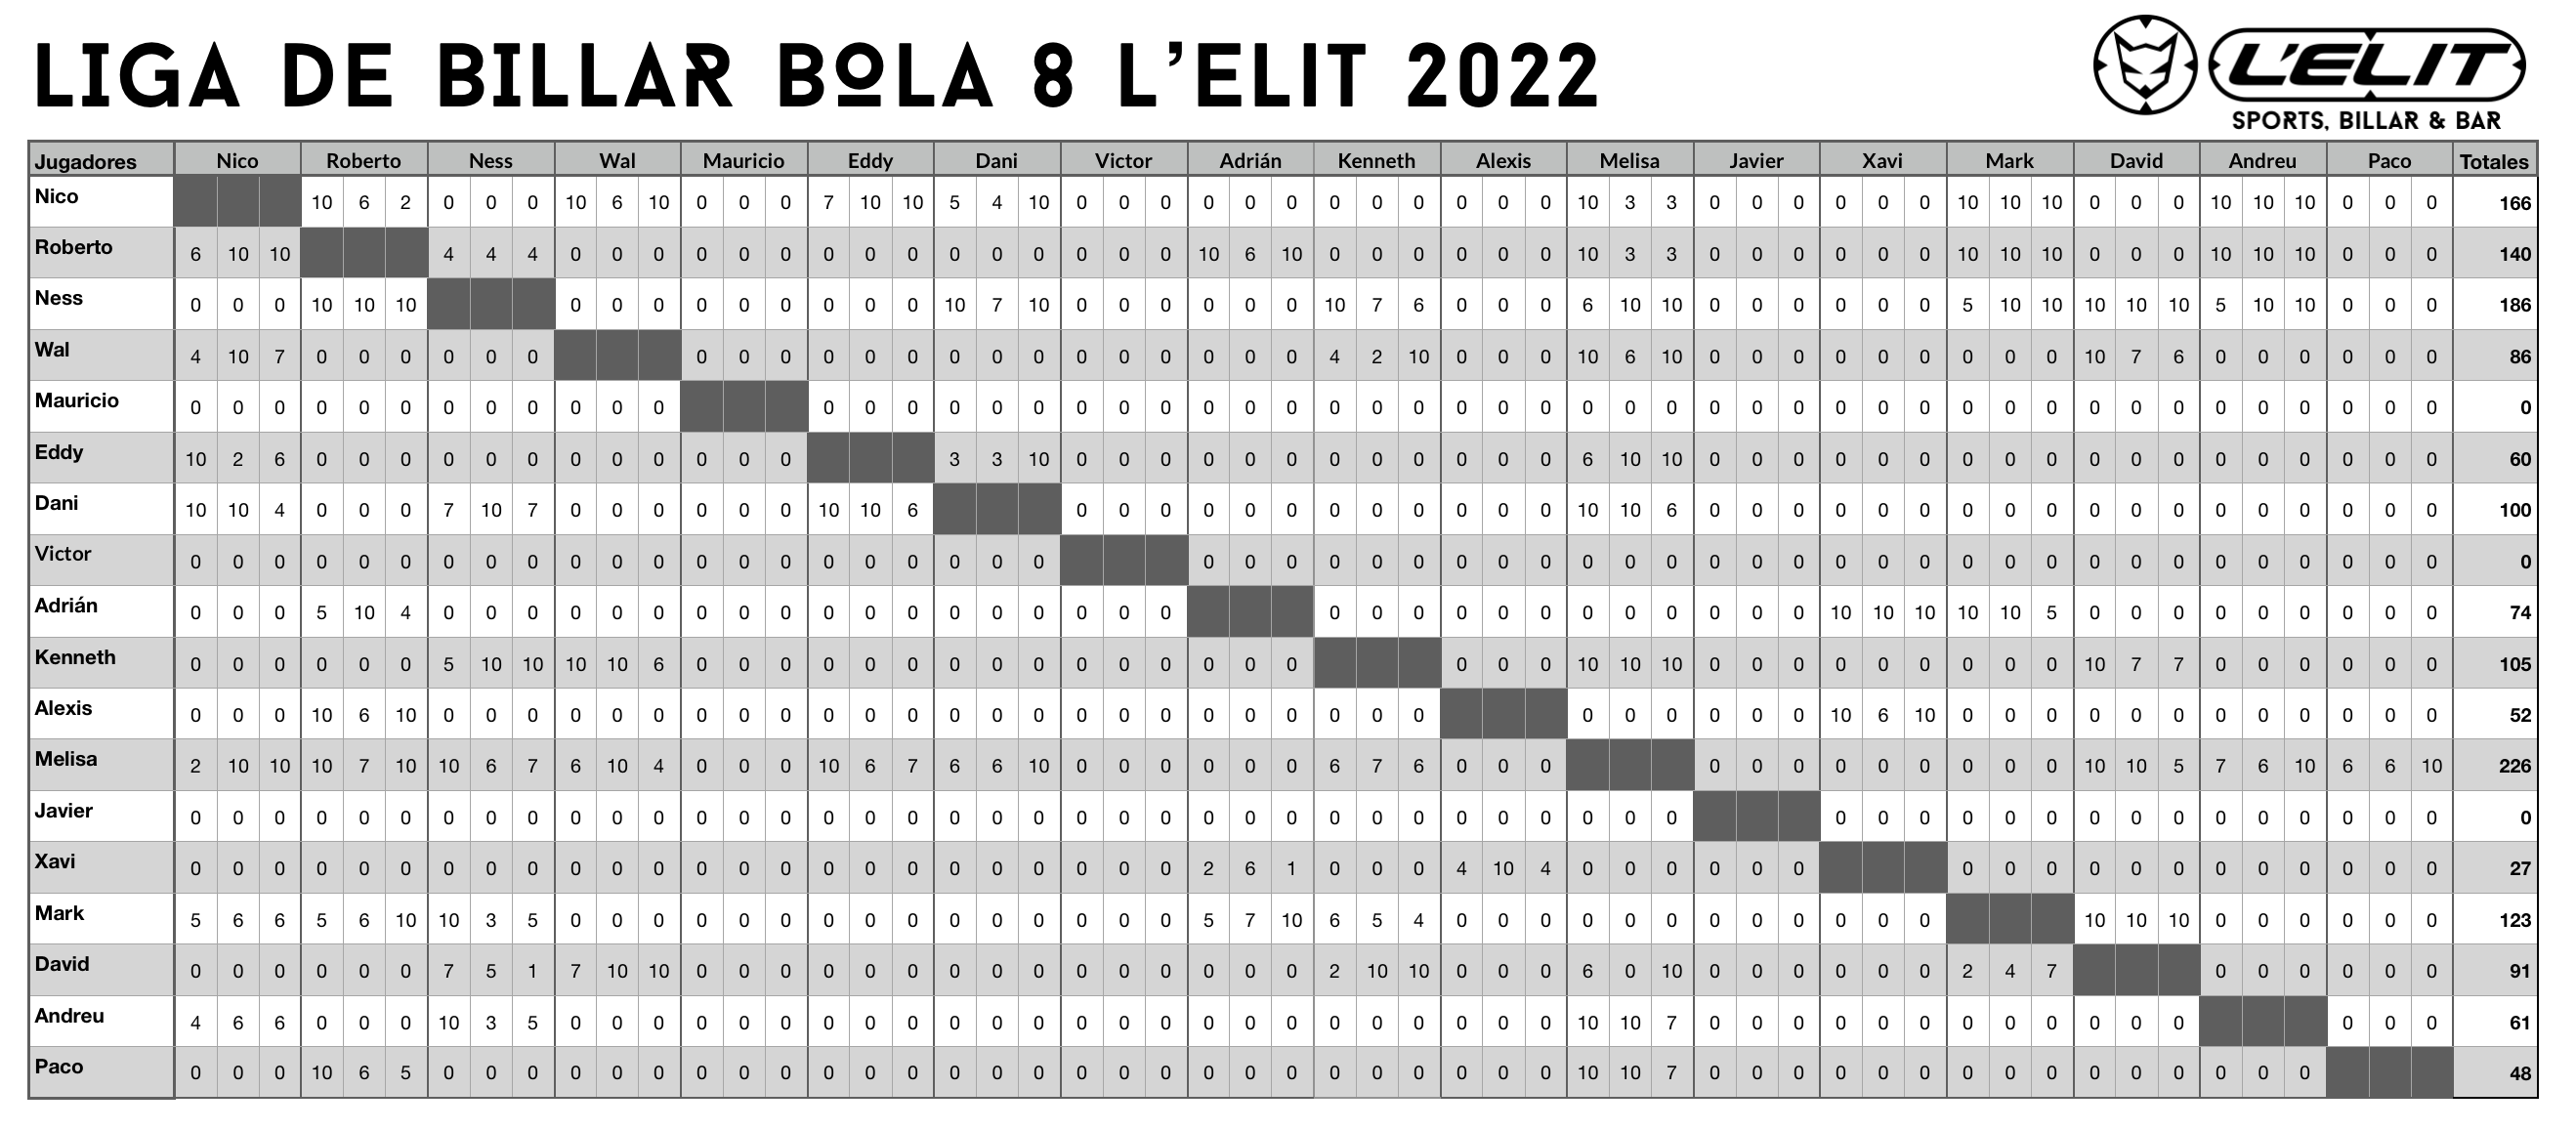 Leaderboard Liga L’Elit actualizado al 02-12-2022